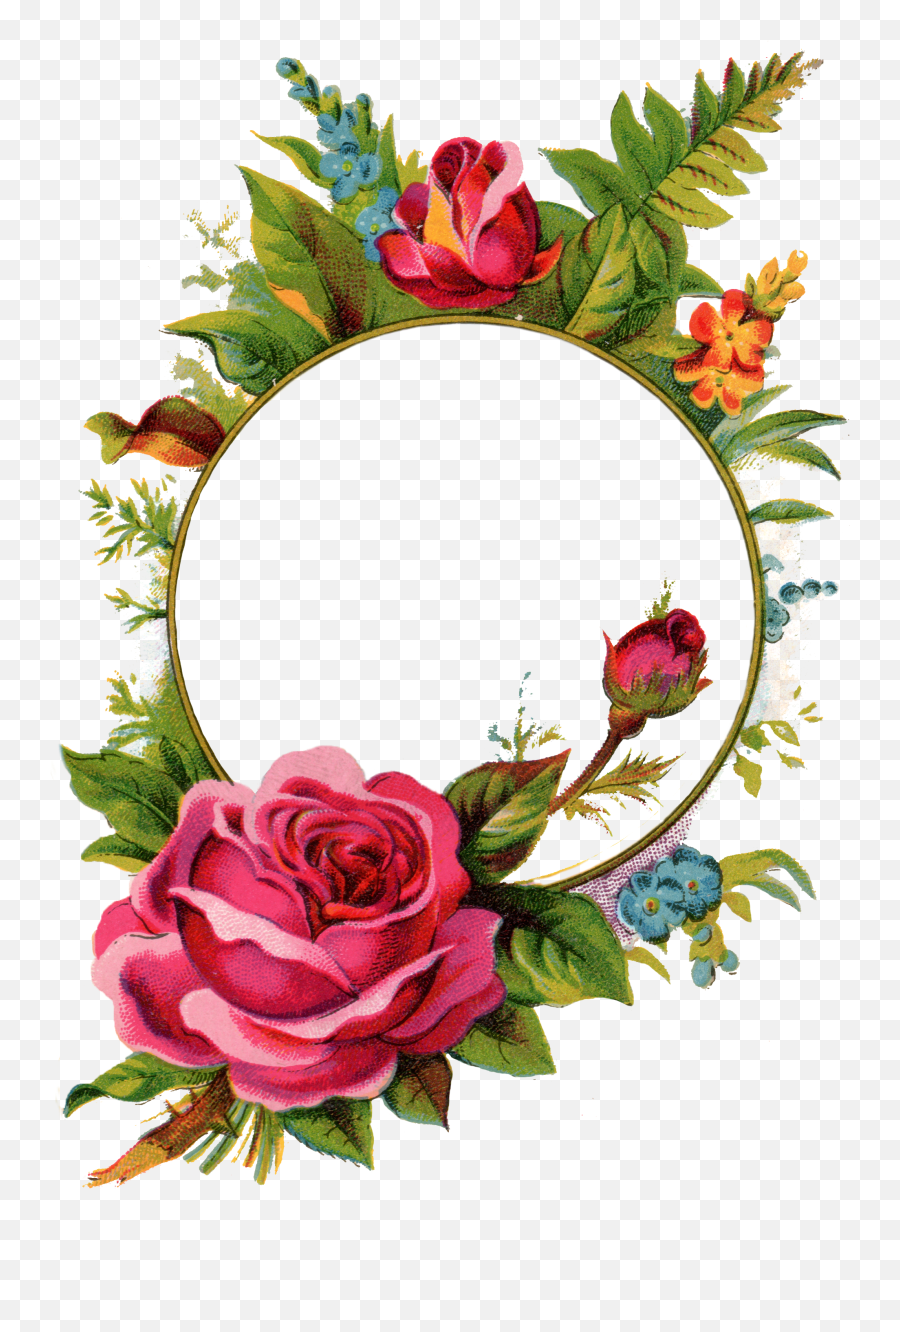 Download Pix For Vintage Rose Frame - Vintage Rose Frame Png,Rose Frame Png